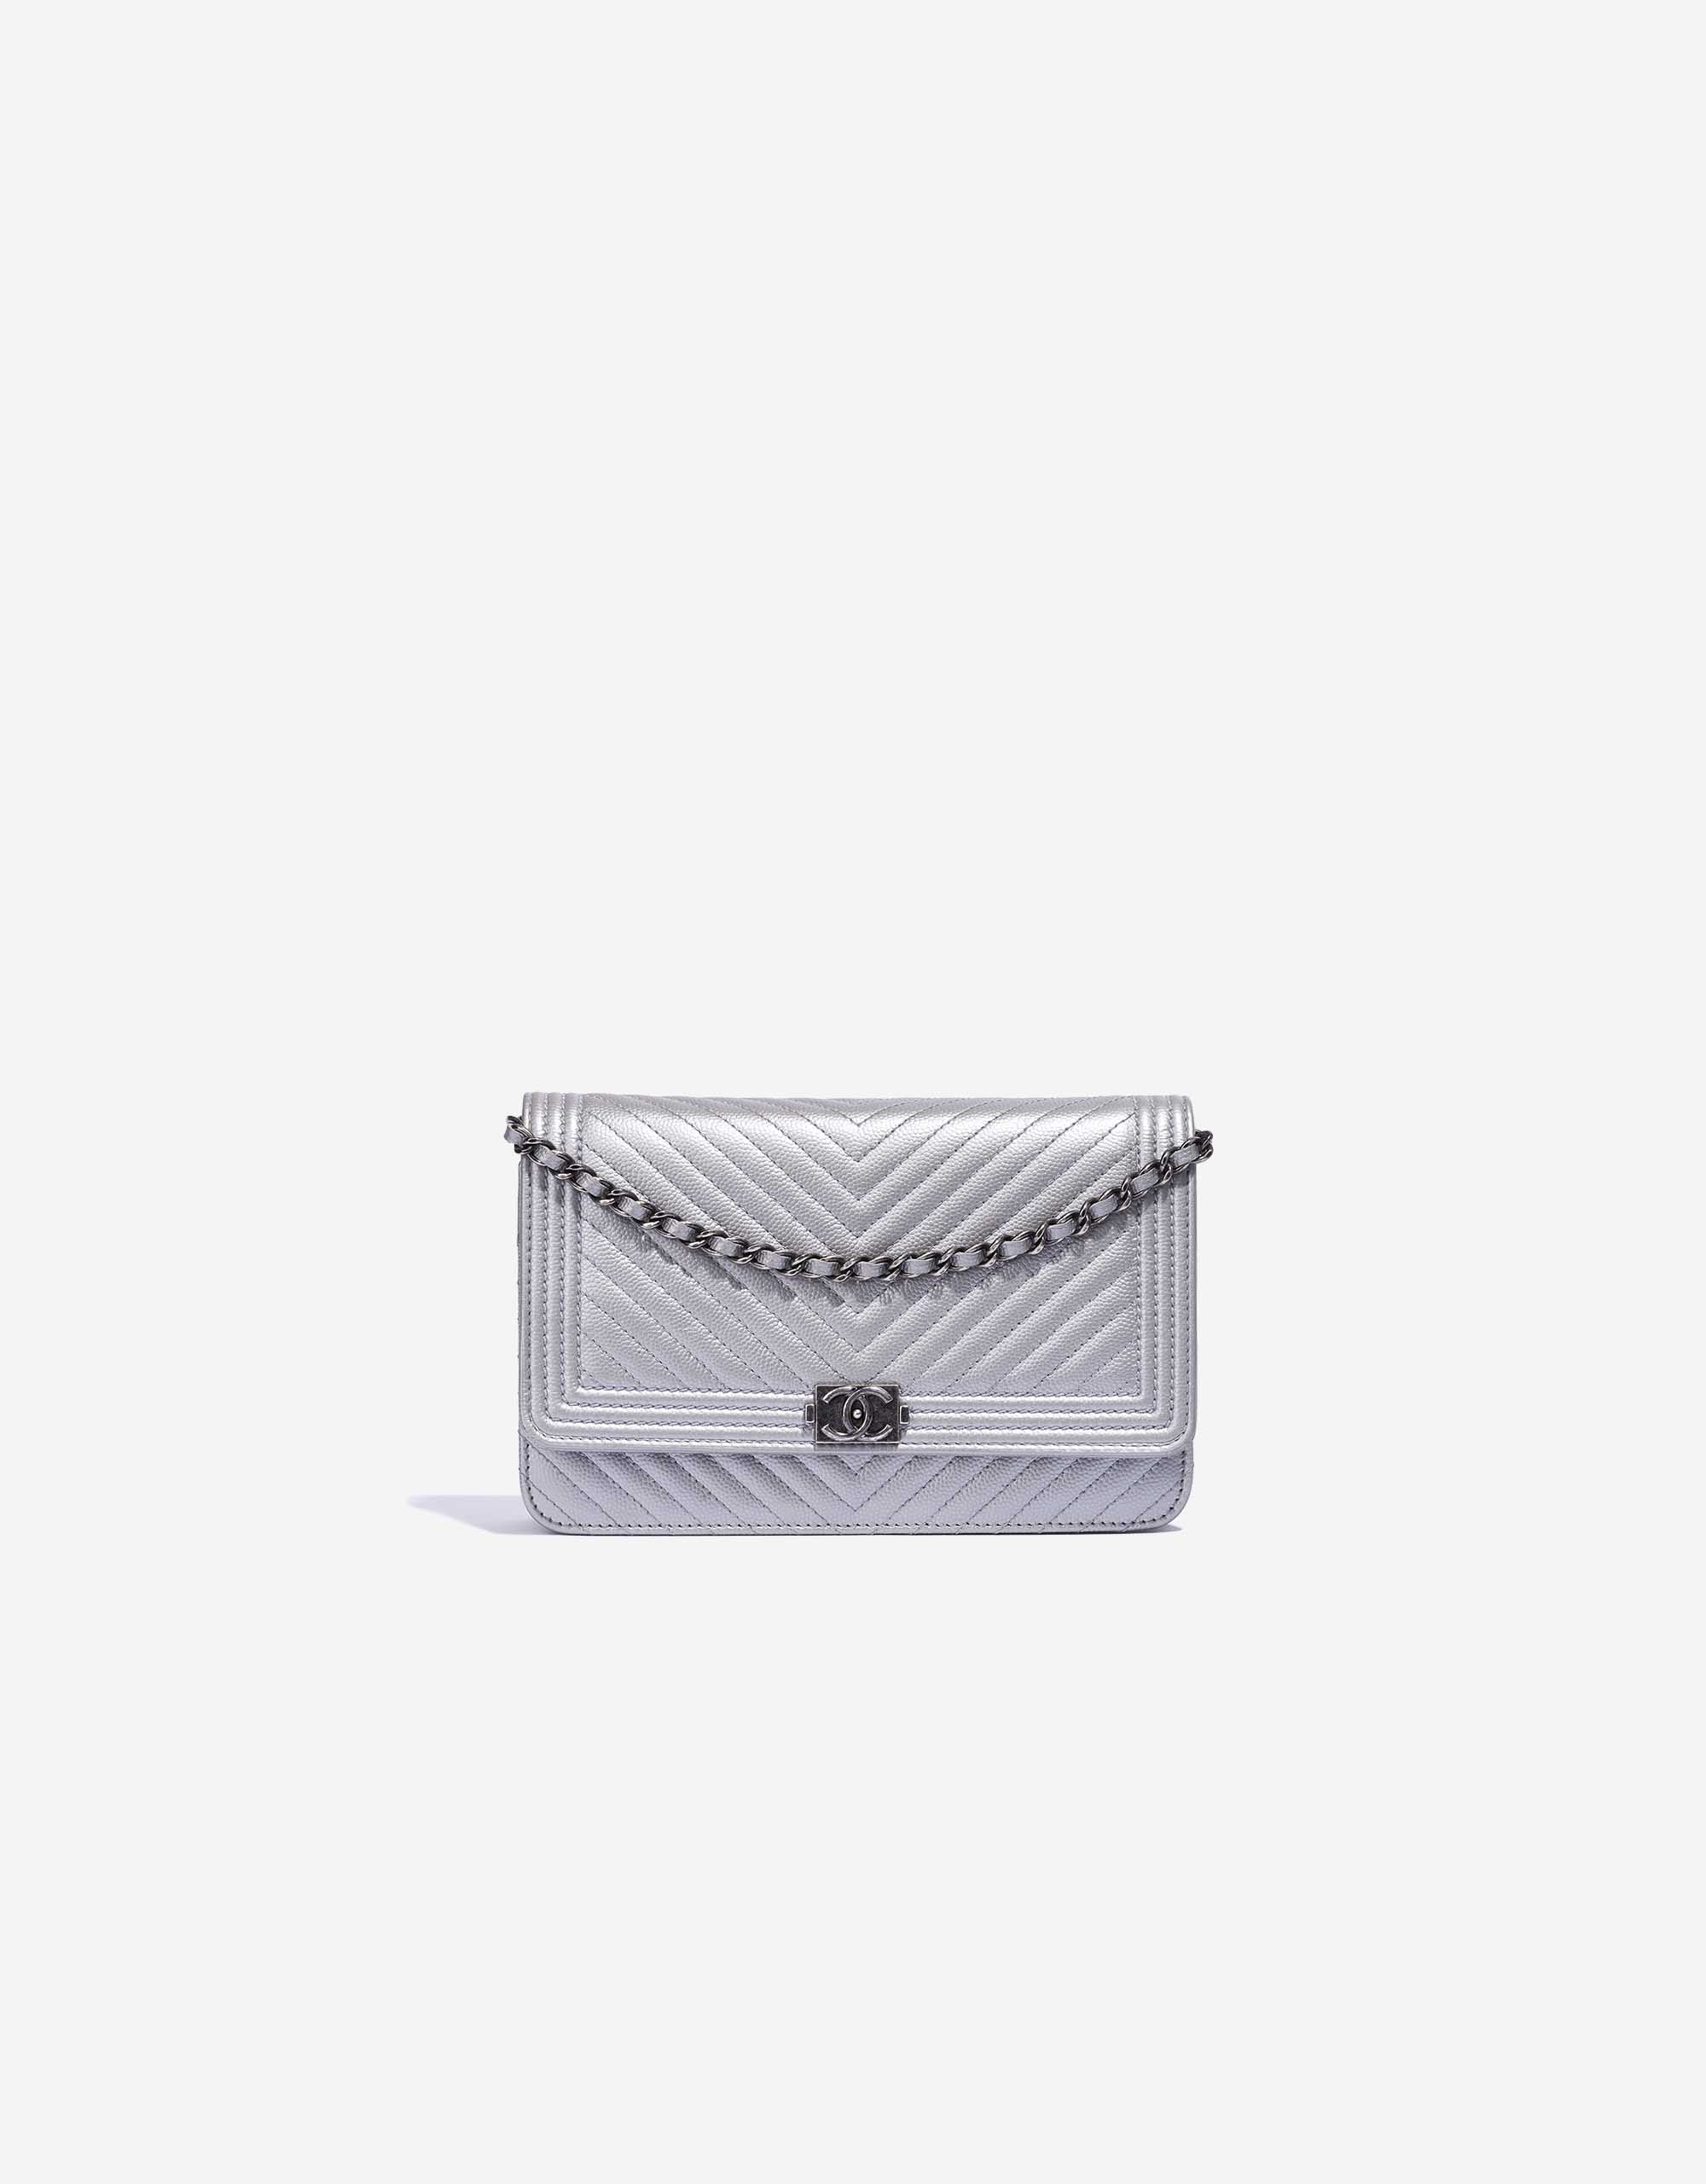 Chanel Boy Woc Caviar Leather Wallet Clutch Bag